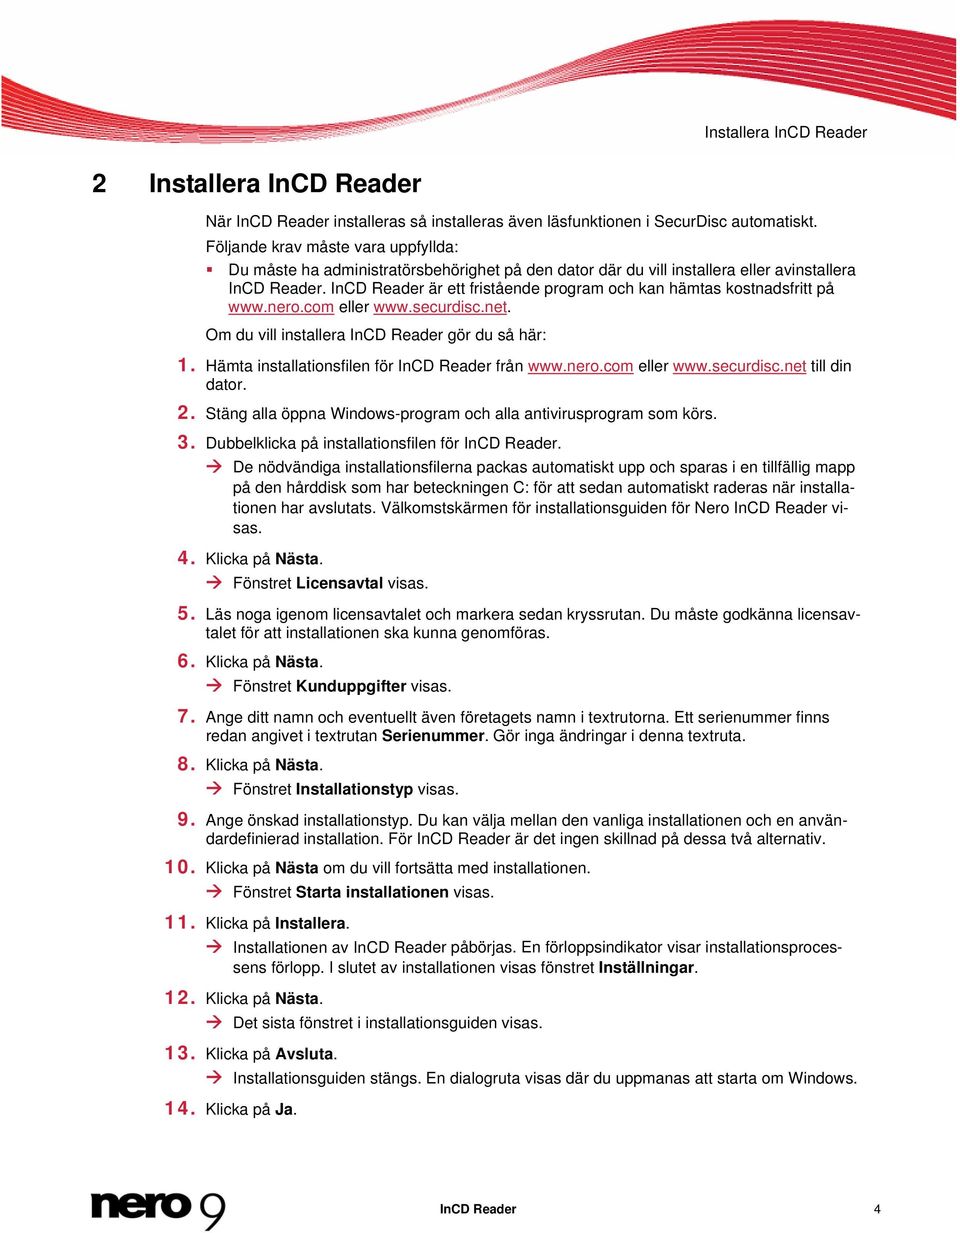 InCD Reader är ett fristående program och kan hämtas kostnadsfritt på www.nero.com eller www.securdisc.net. Om du vill installera InCD Reader gör du så här: 1.